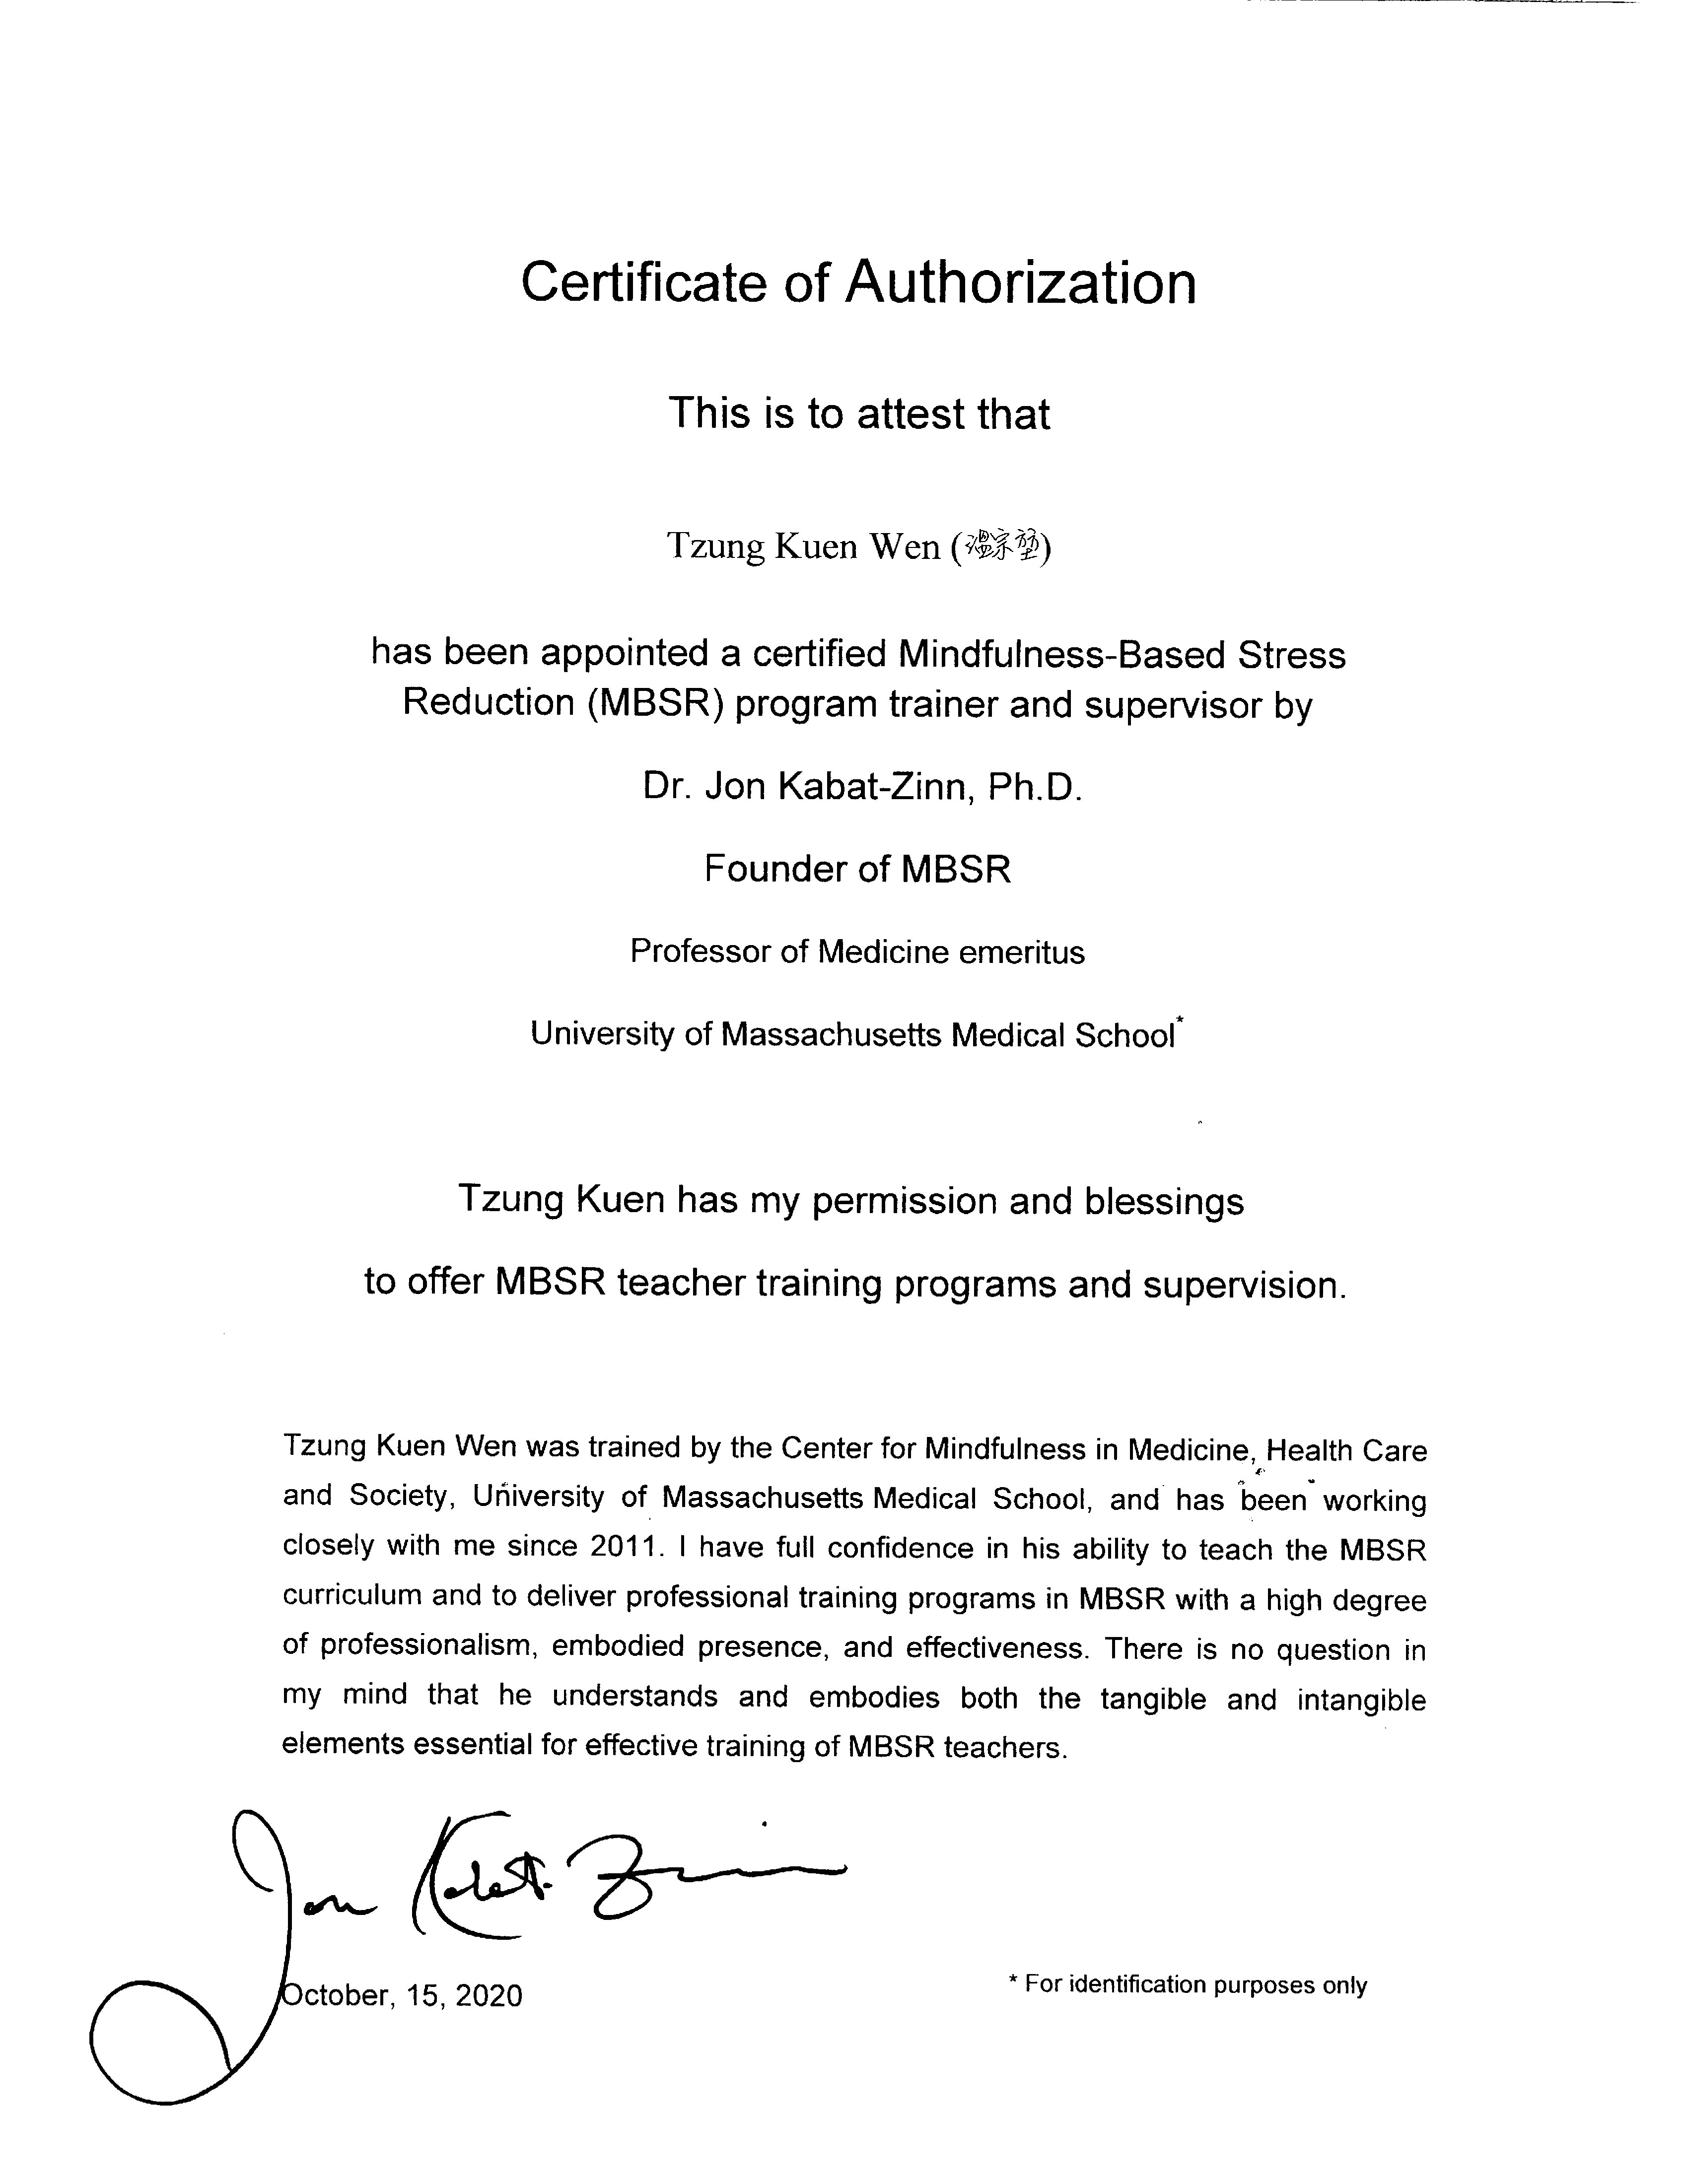 創始人卡巴金博士授權正念減壓(MBSR)師資培訓之親筆簽名證書：溫宗堃老師